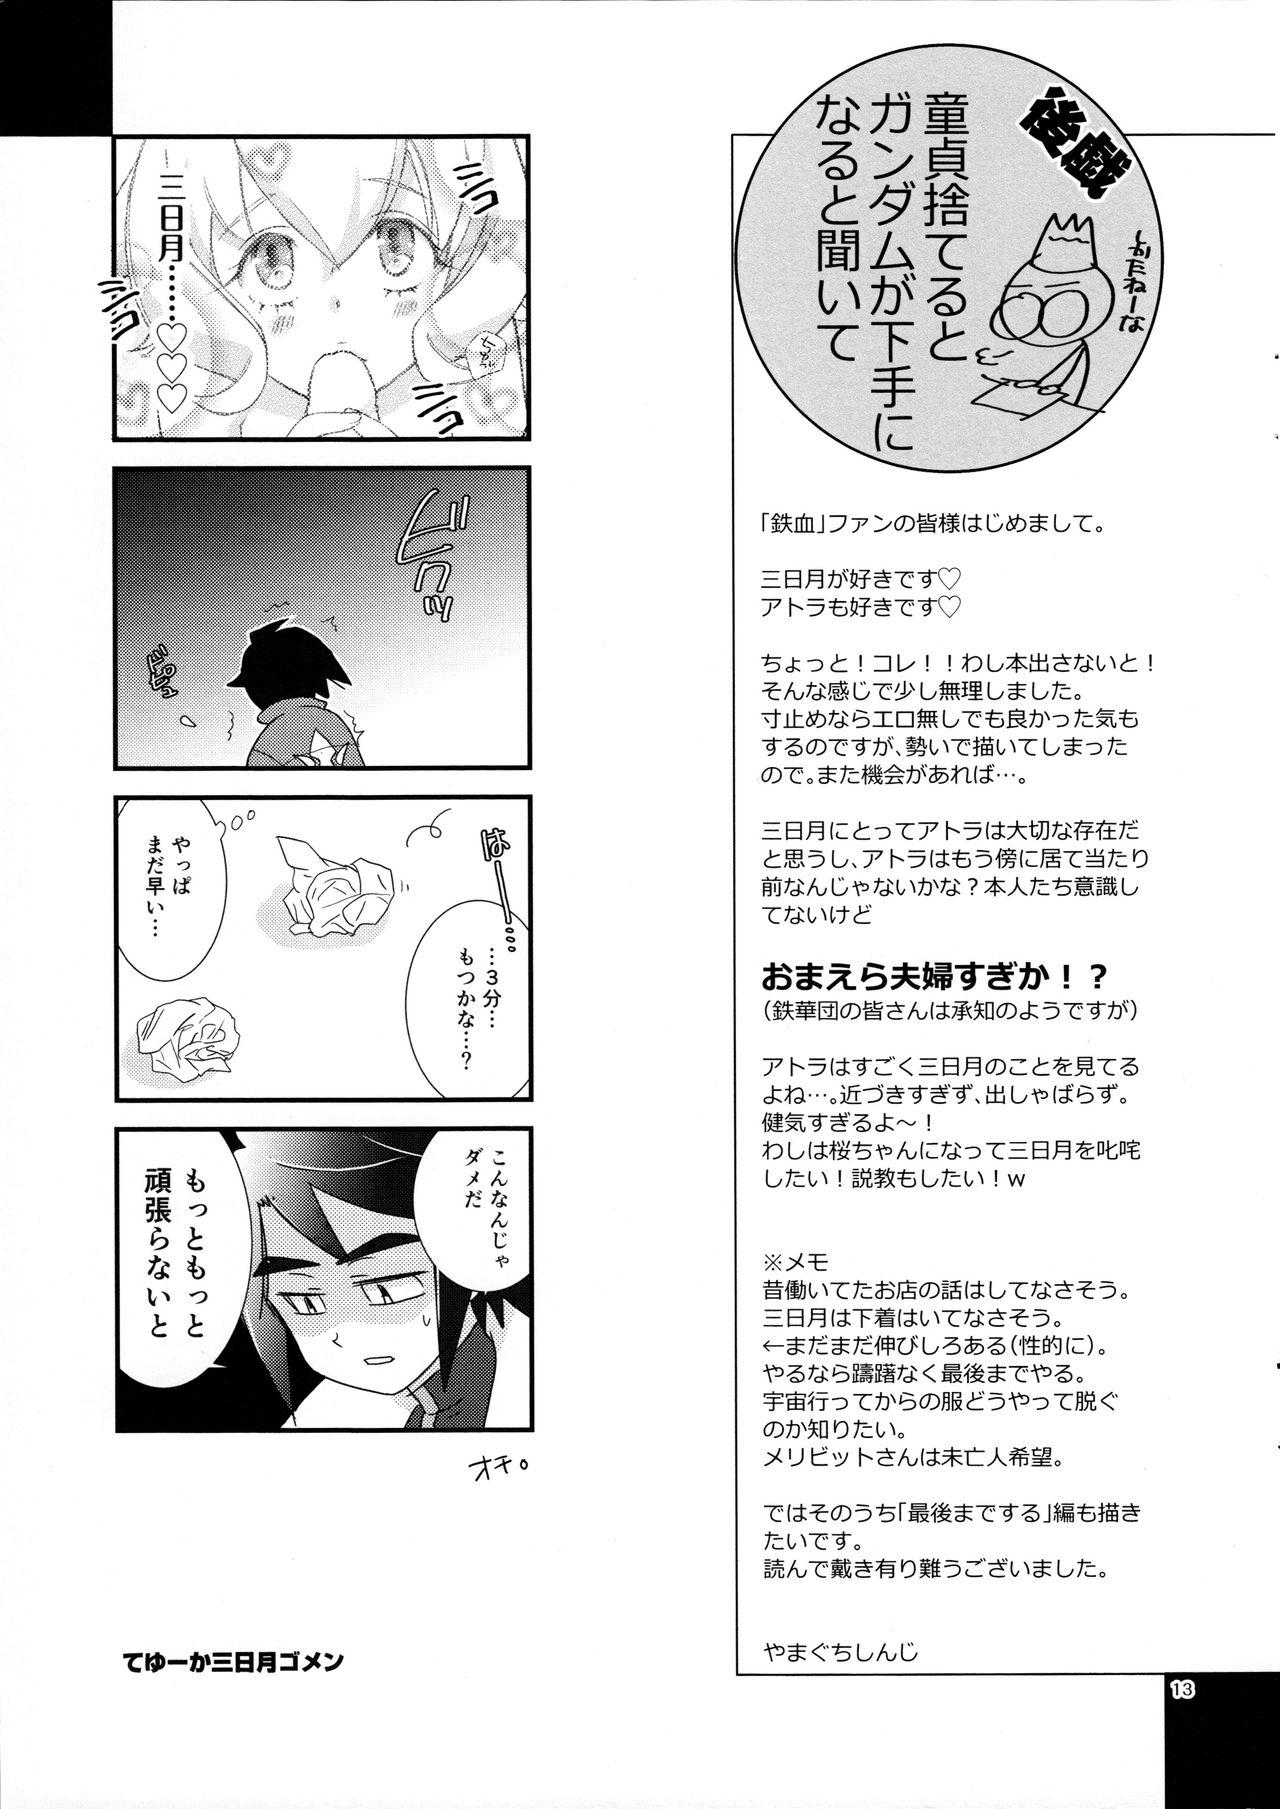 Sis Mikazuki wa Itsumo Saigomade Shinai - Mobile suit gundam tekketsu no orphans Beauty - Page 12